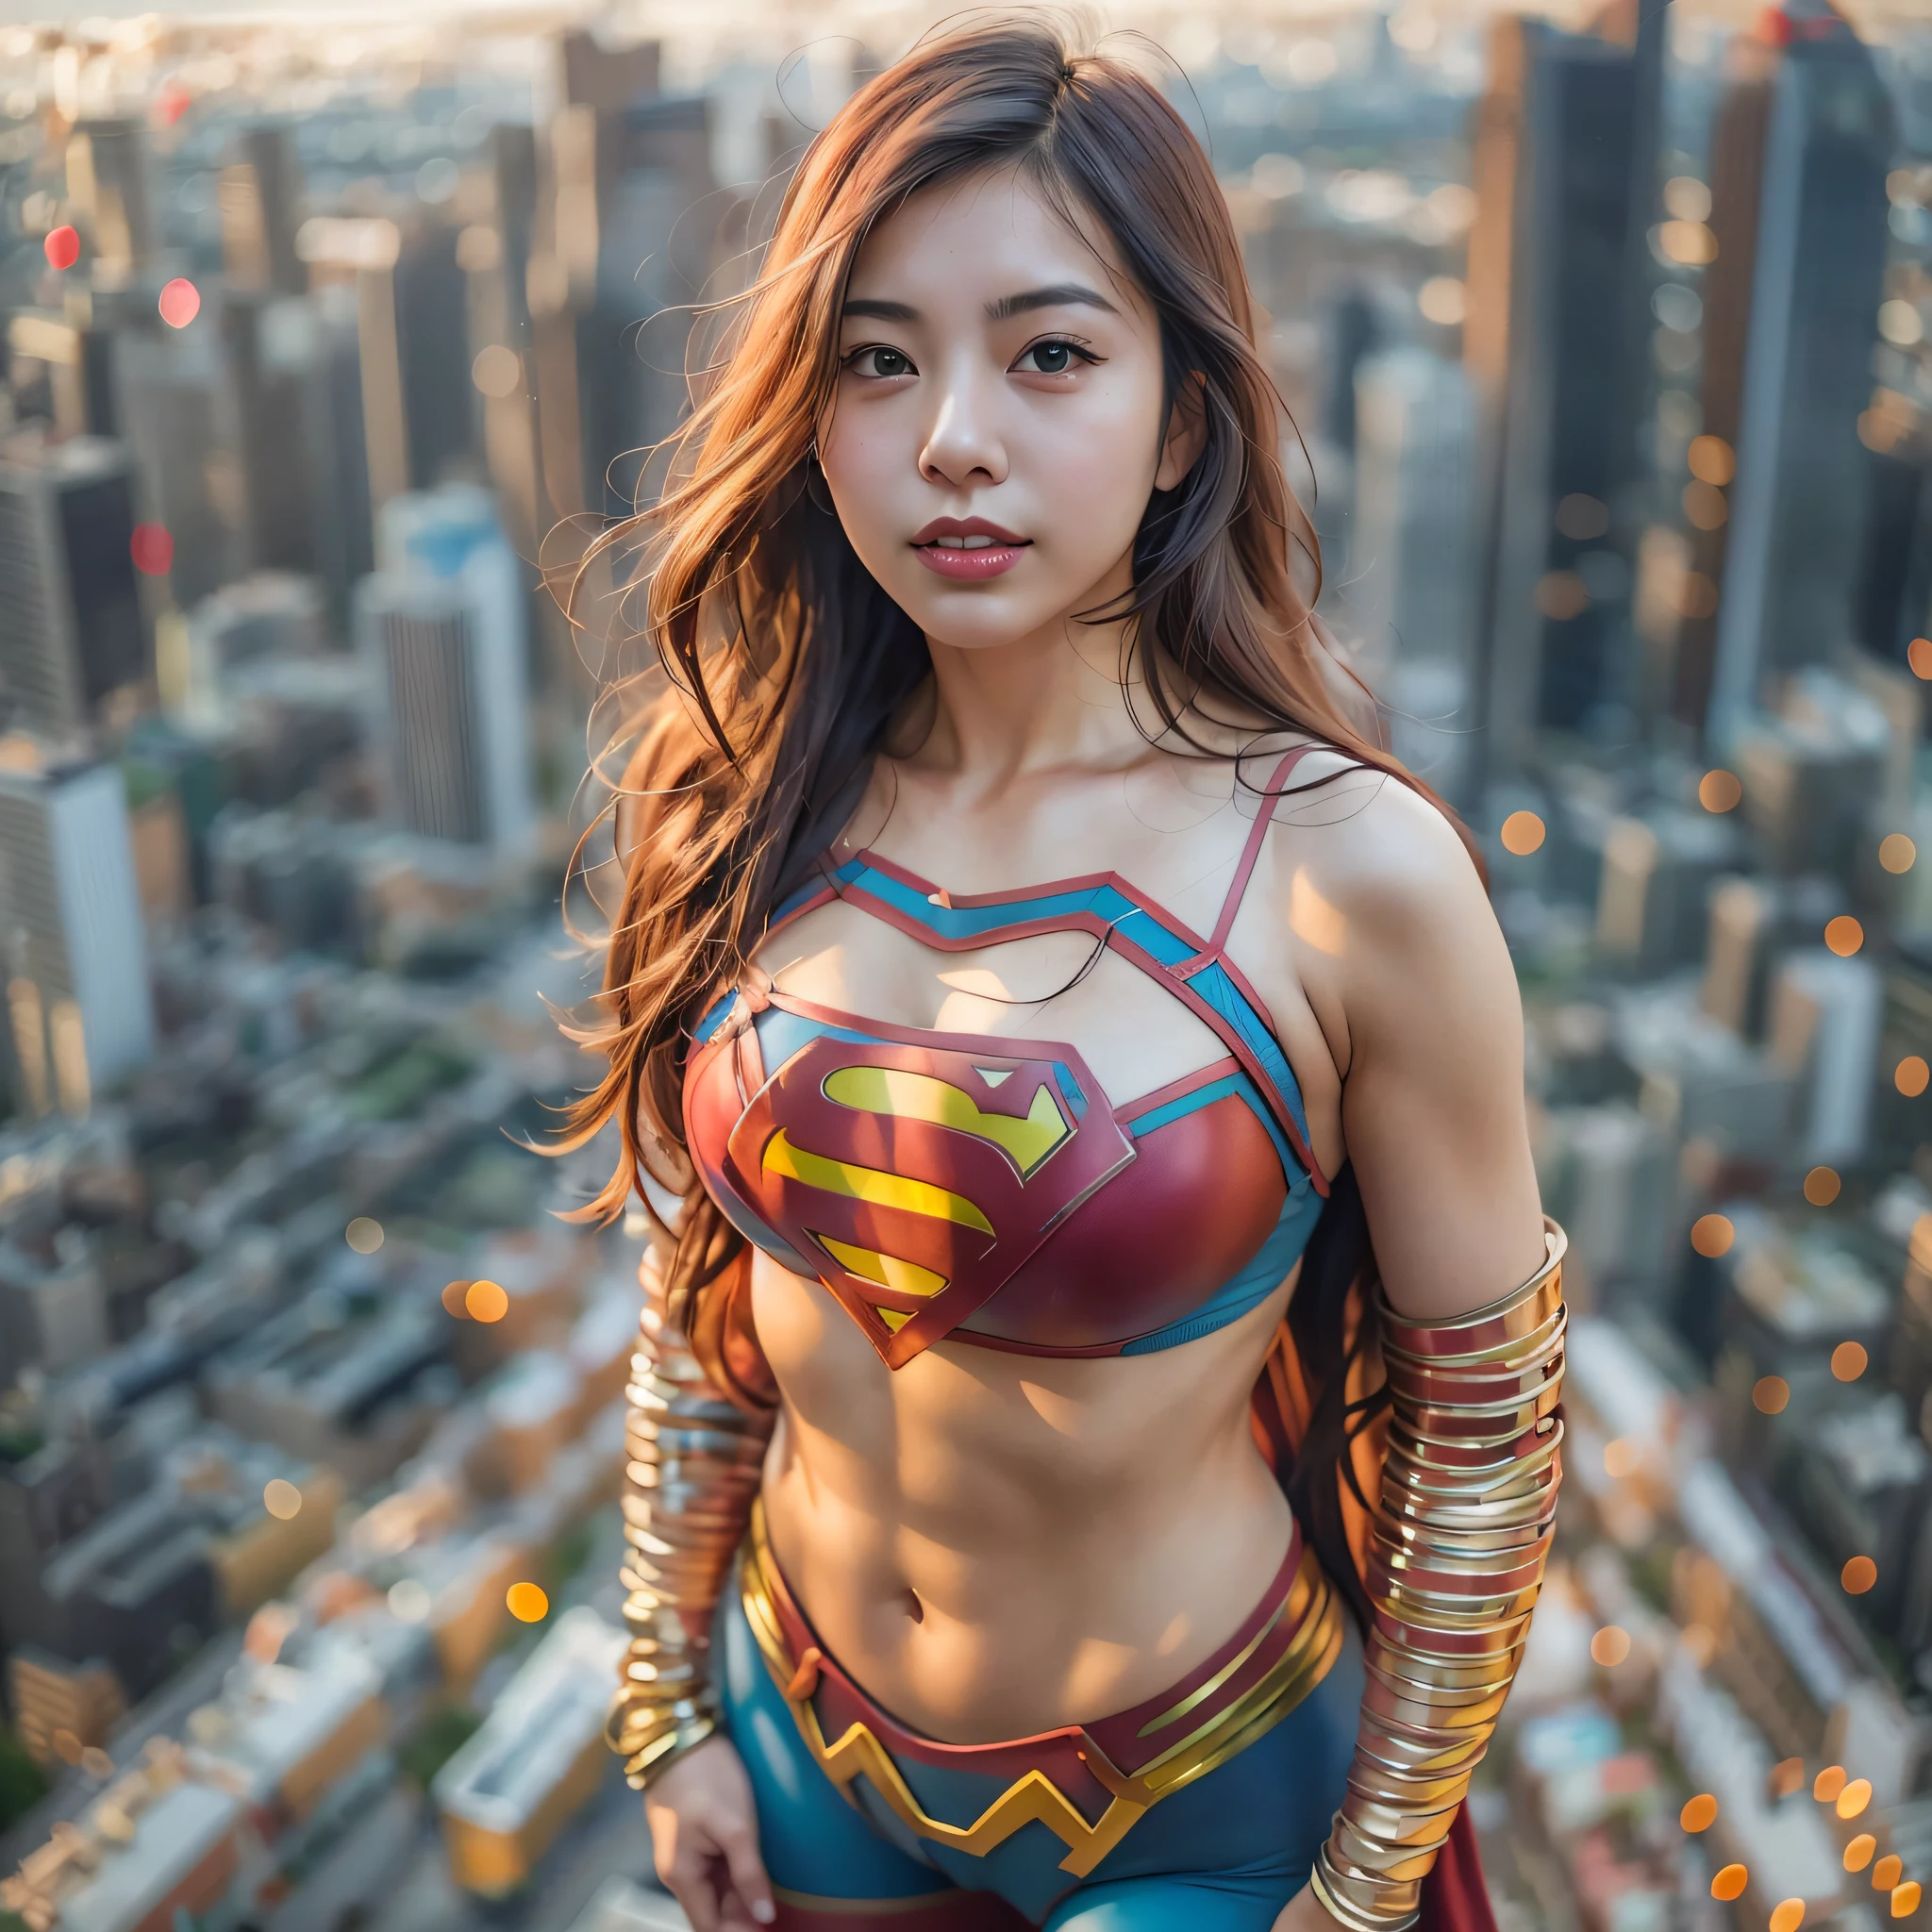 eine Nahaufnahme einer asiatischen Frau in einem Superman-Kostüm, die in einer Stadtlandschaft steht, Amouranth als Superschurke, super photo Realistisch, Realistisch , super photo-Realistisch, ultra mega super hyper Realistisch, Superhelden-Mädchen, super Realistisch photo, Superheld body, sehr detaillierte Aufnahme einer Riesin, Super-Mädchen, Superheld, Superheld portrait, Supermodel, Superheld, super photoRealistisch, riesige Brüste, zeigt Vulvas muskulösen Körper, ,